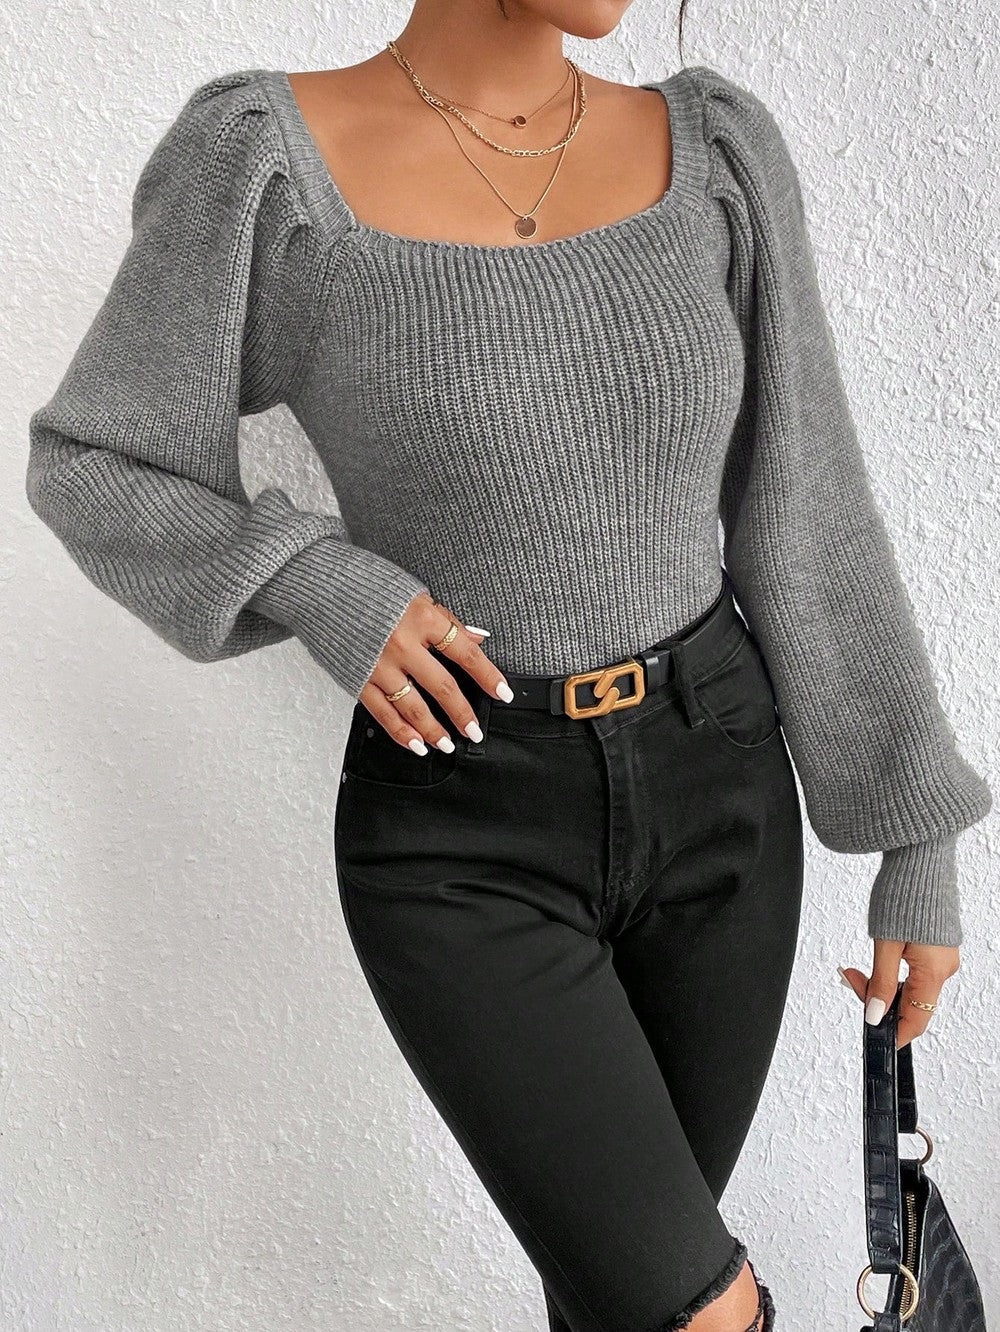 StrickSinn® - Grauer einfarbiger Pullover mit quadratischem Ausschnitt